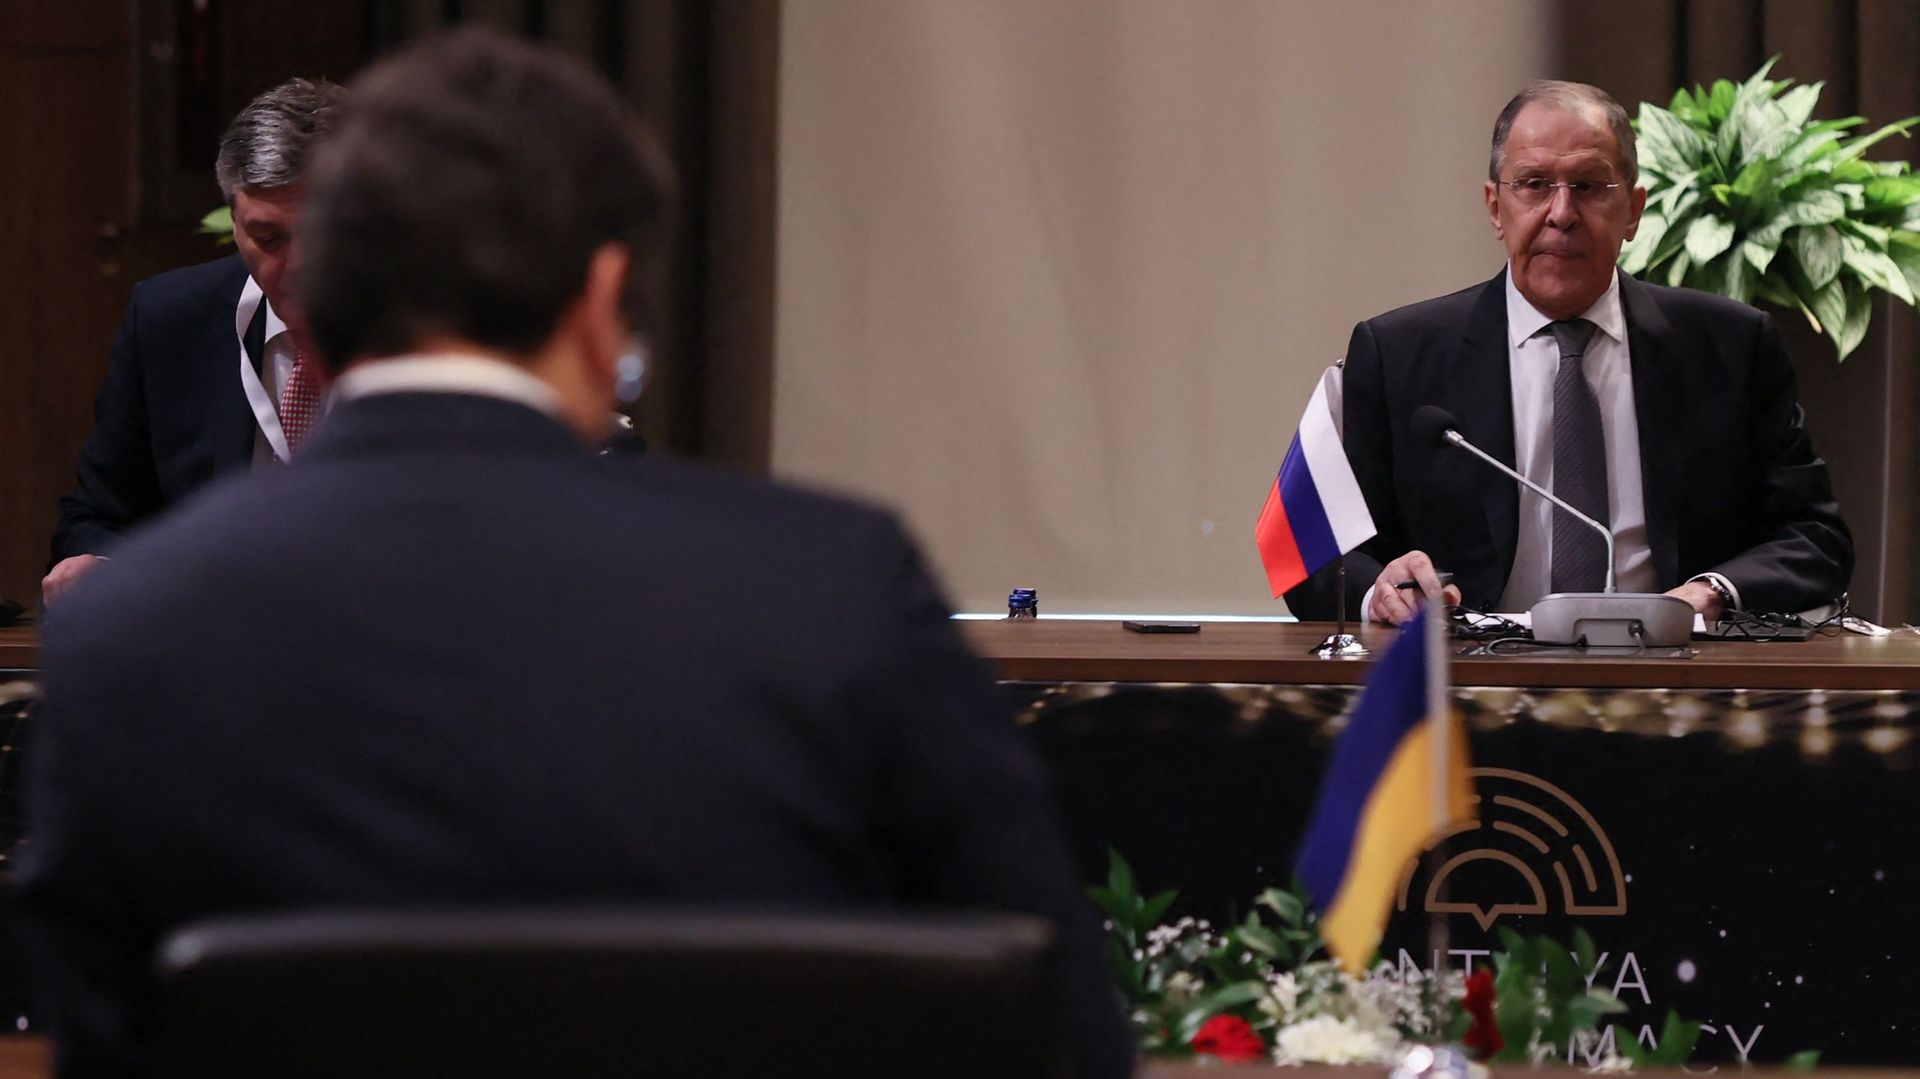 Le ministre russe des Affaires étrangères Sergueï Lavrov (à droite) et le ministre ukrainien des Affaires étrangères Dmytro Kuleba (de dos) participant à la réunion tripartite des ministres des Affaires étrangères Russie-Turquie-Ukraine à Antalya, 10 mars